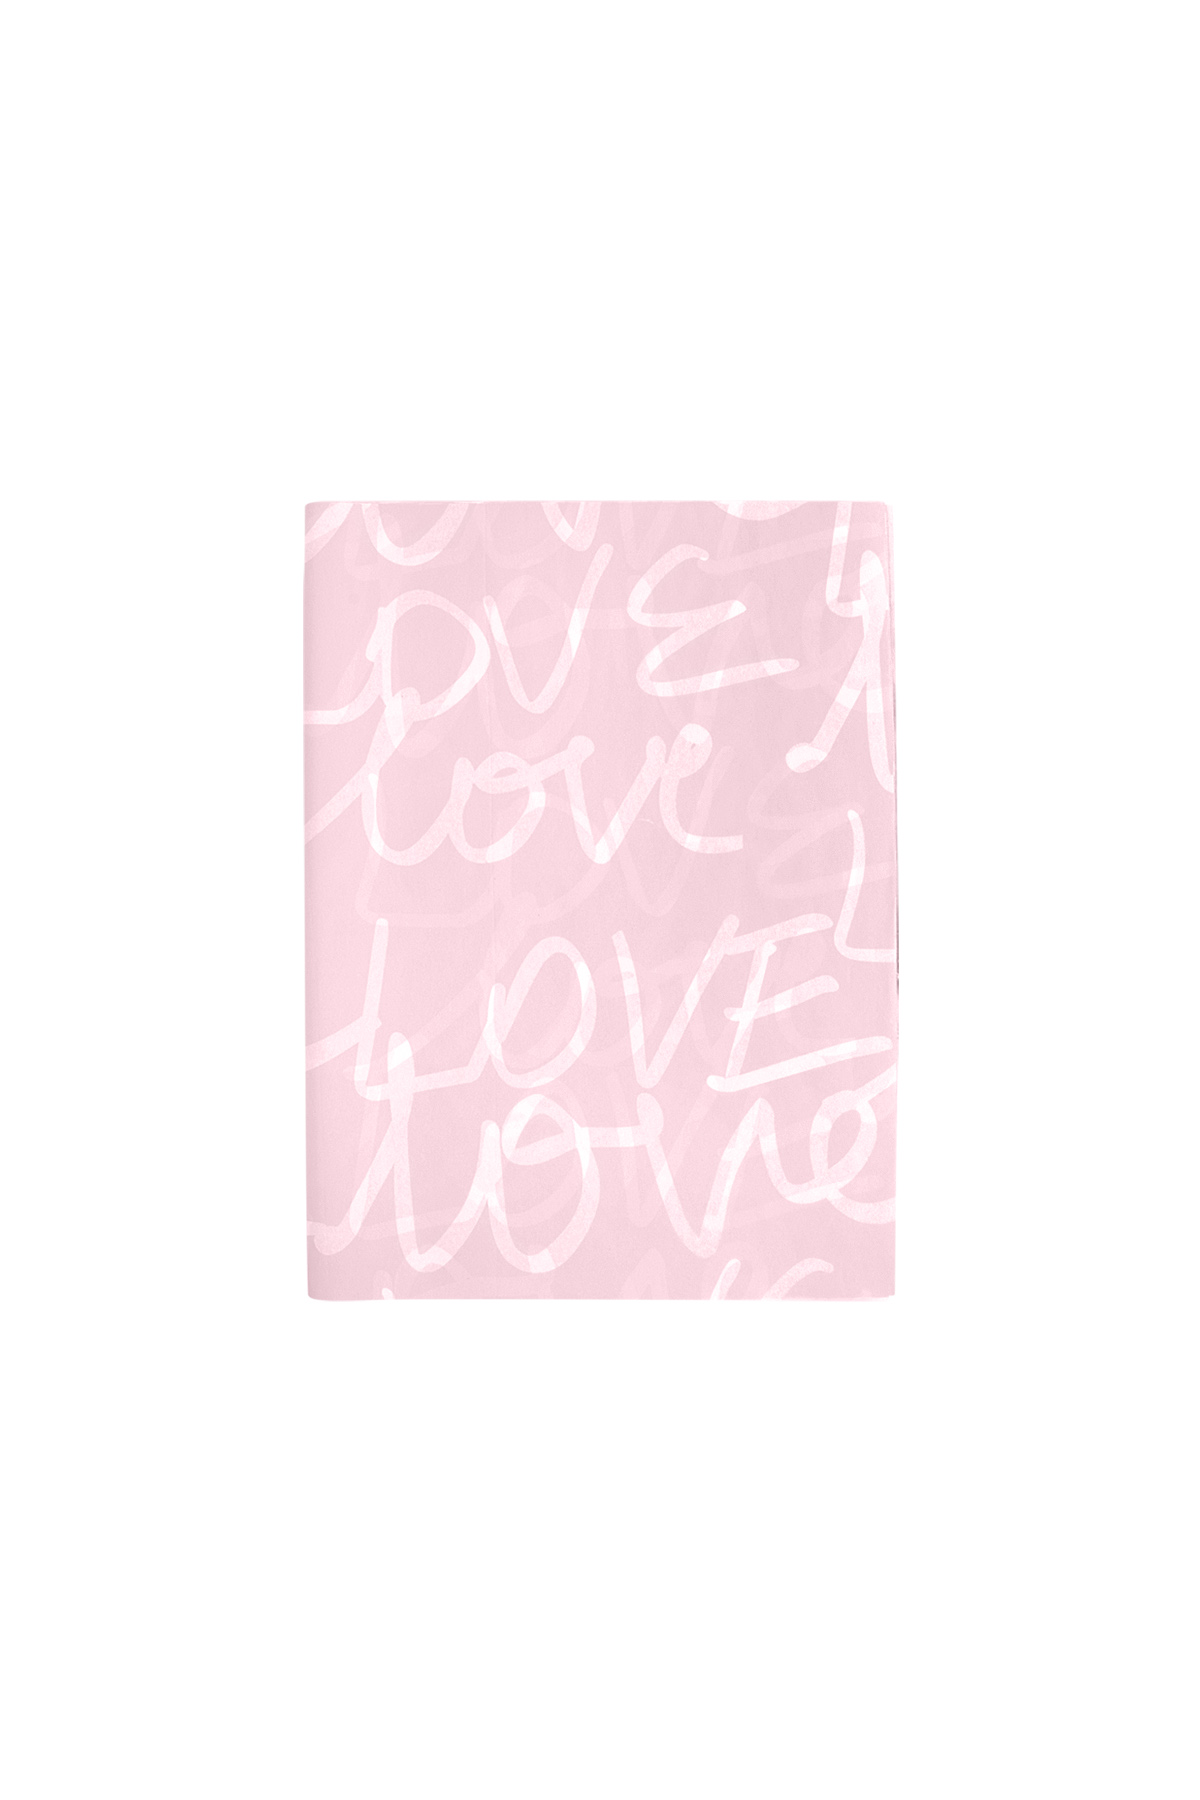 Rollenpapier Portrait Love - rosa Papier